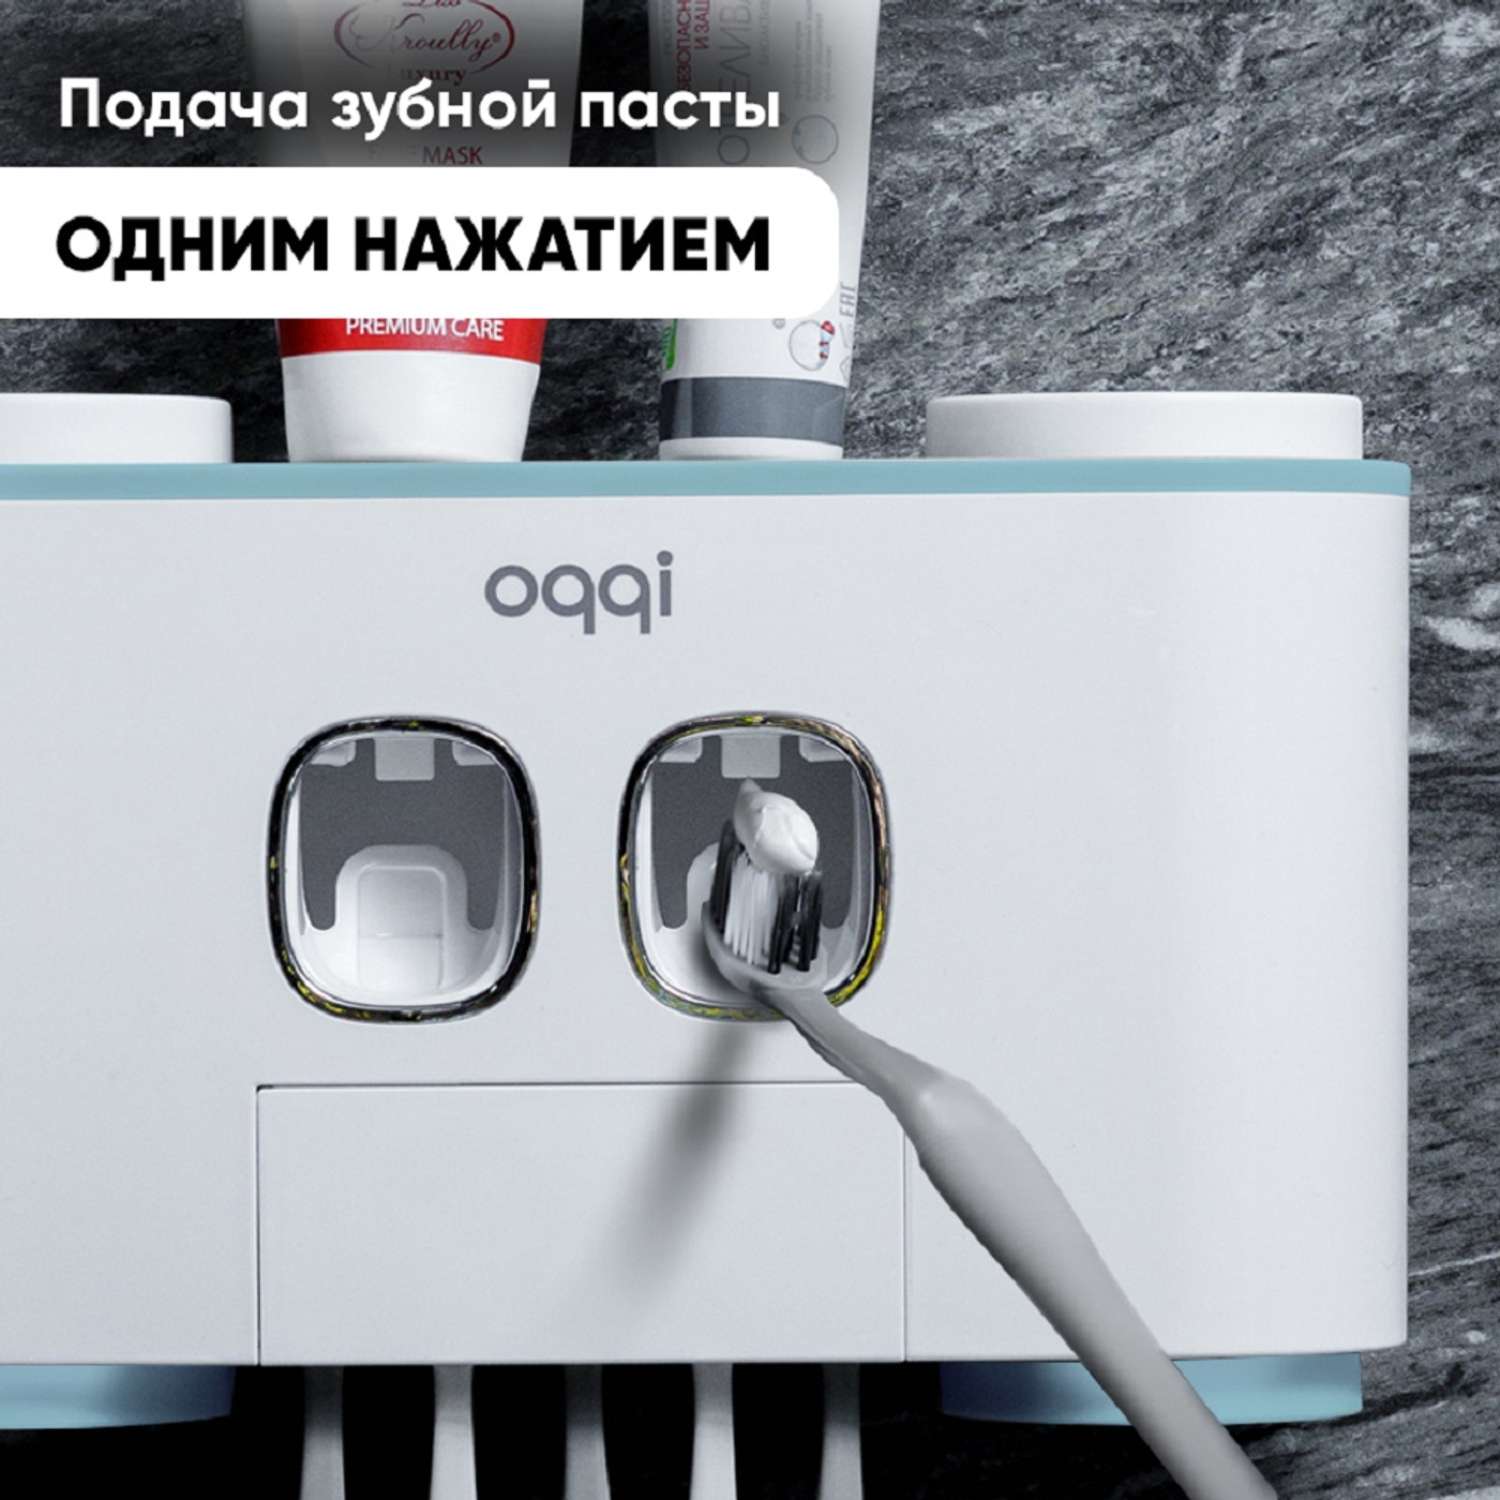 Дозатор для ванной комнаты oqqi держатель для зубных щеток с дозатором для зубной пасты - фото 5